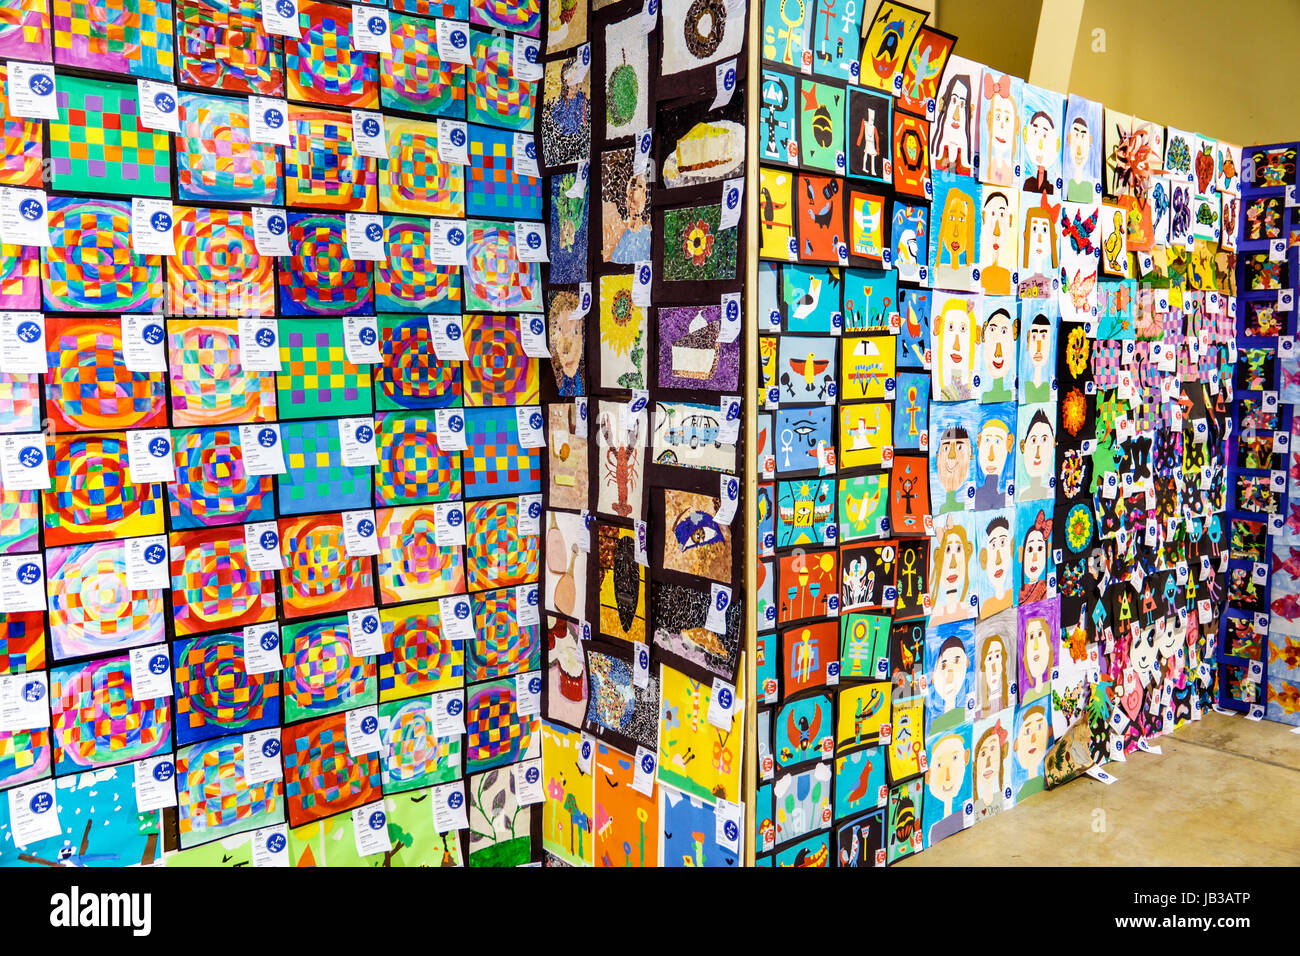 Miami Florida,Tamiami Park,Miami-Dade County Youth Fair & Exposition,County fair,arte,mostra collezione scuola elementare,collage,disegni, Foto Stock